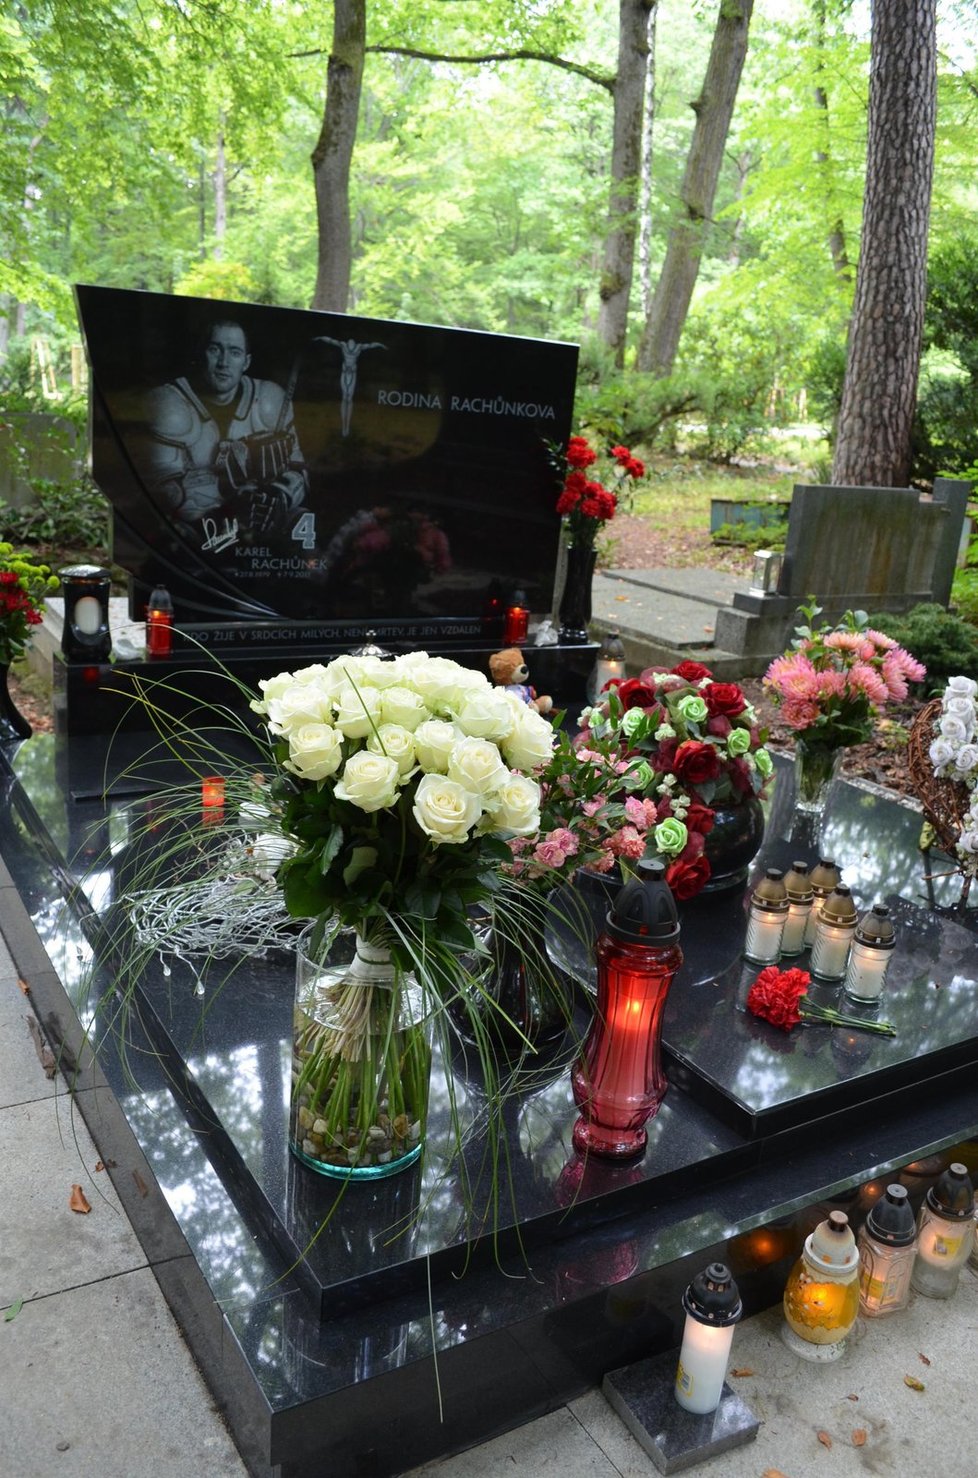 Prostor okolo Karlova hrobu je upraven. Přibyla i lavička, na které mohou nejbližší, přátelé i fanoušci vzpomínat a promlouvat s ním